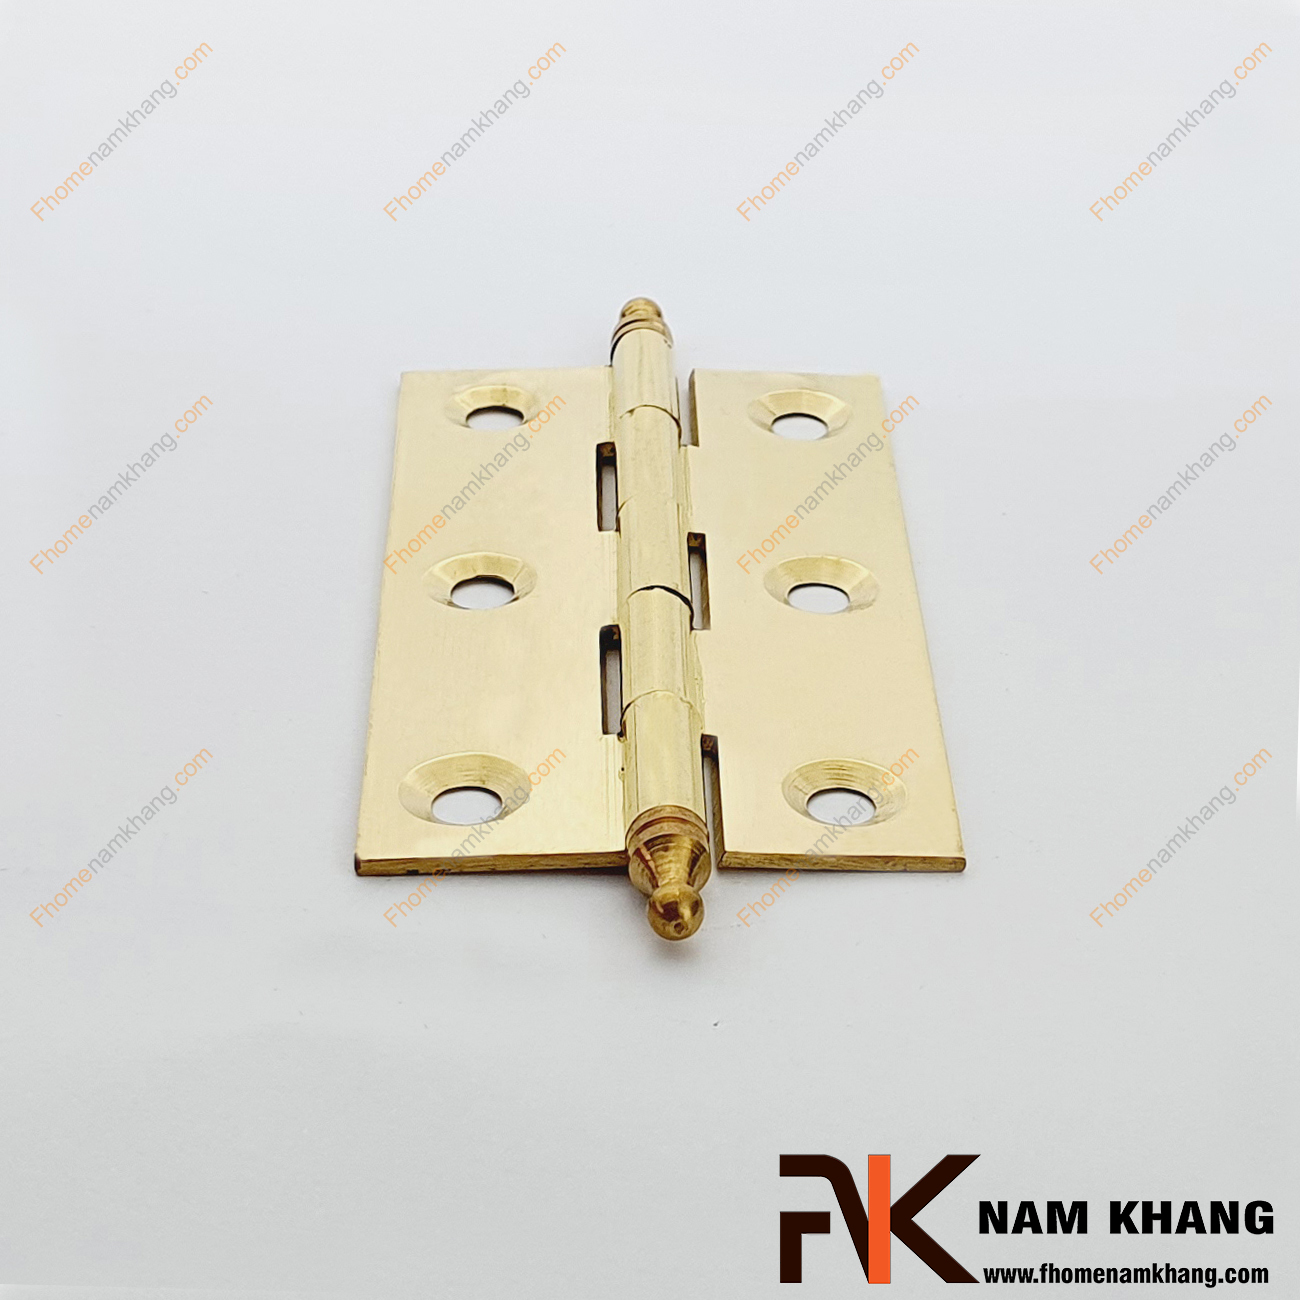 Bản lề tủ dạng trơn màu đồng vàng NK471M-8FDO được sản xuất từ đồng cao cấp, size nhỏ chuyên dùng cho các dạng tủ kệ nhỏ, cánh cửa tủ, cánh hộp gỗ, cánh thùng gỗ và hộp quà tặng.